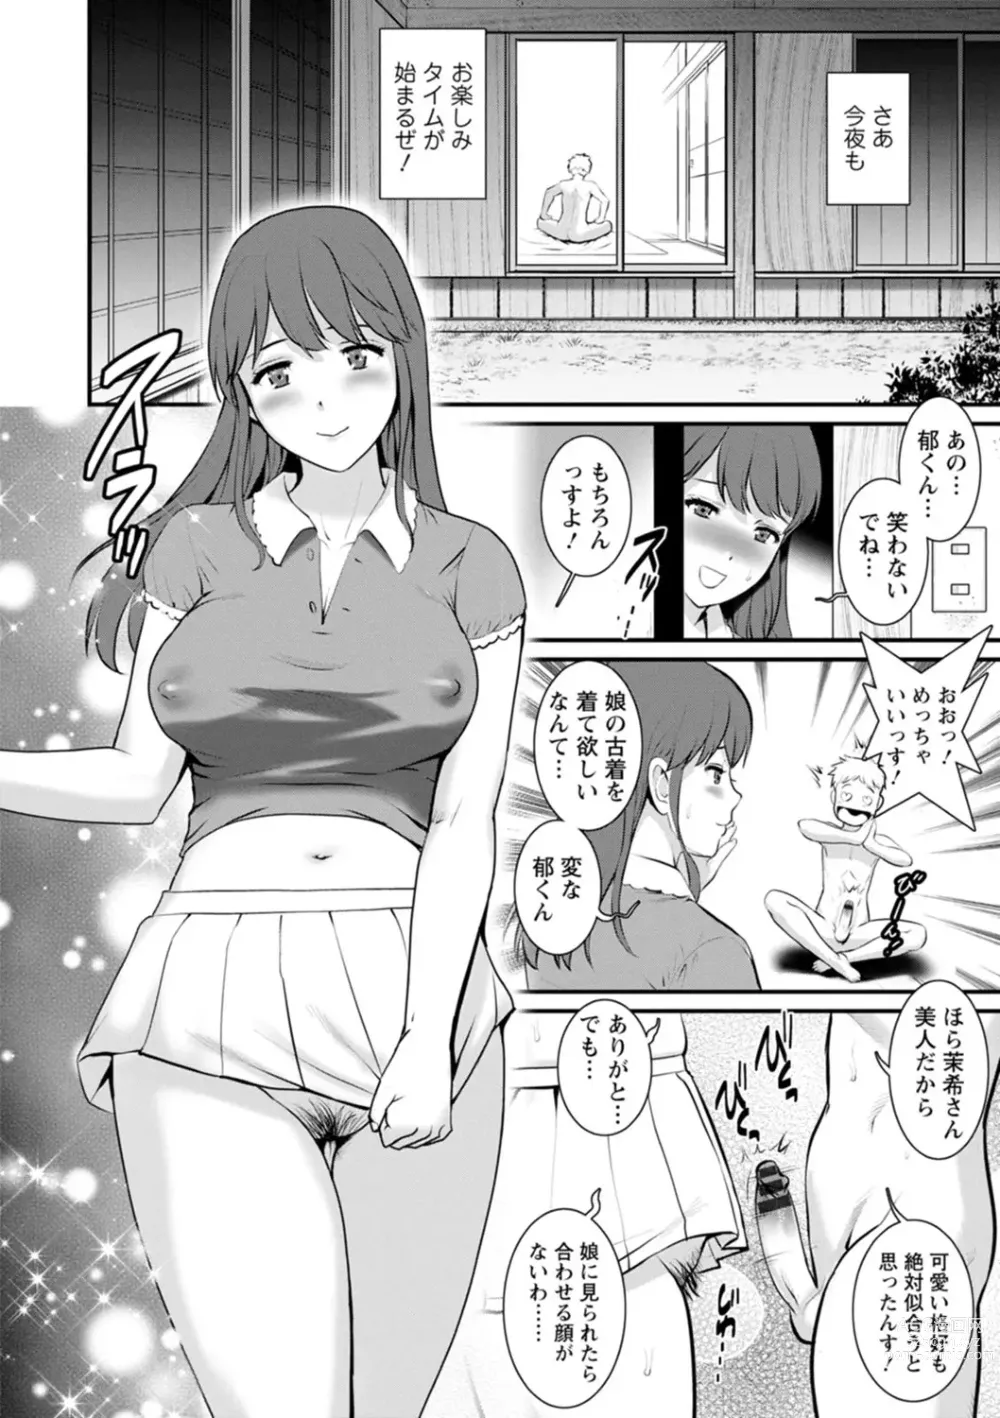 Page 16 of manga Meshibe no Nomikomi yuku Hate ni Meshibe no Sakihokoru Shima de 2